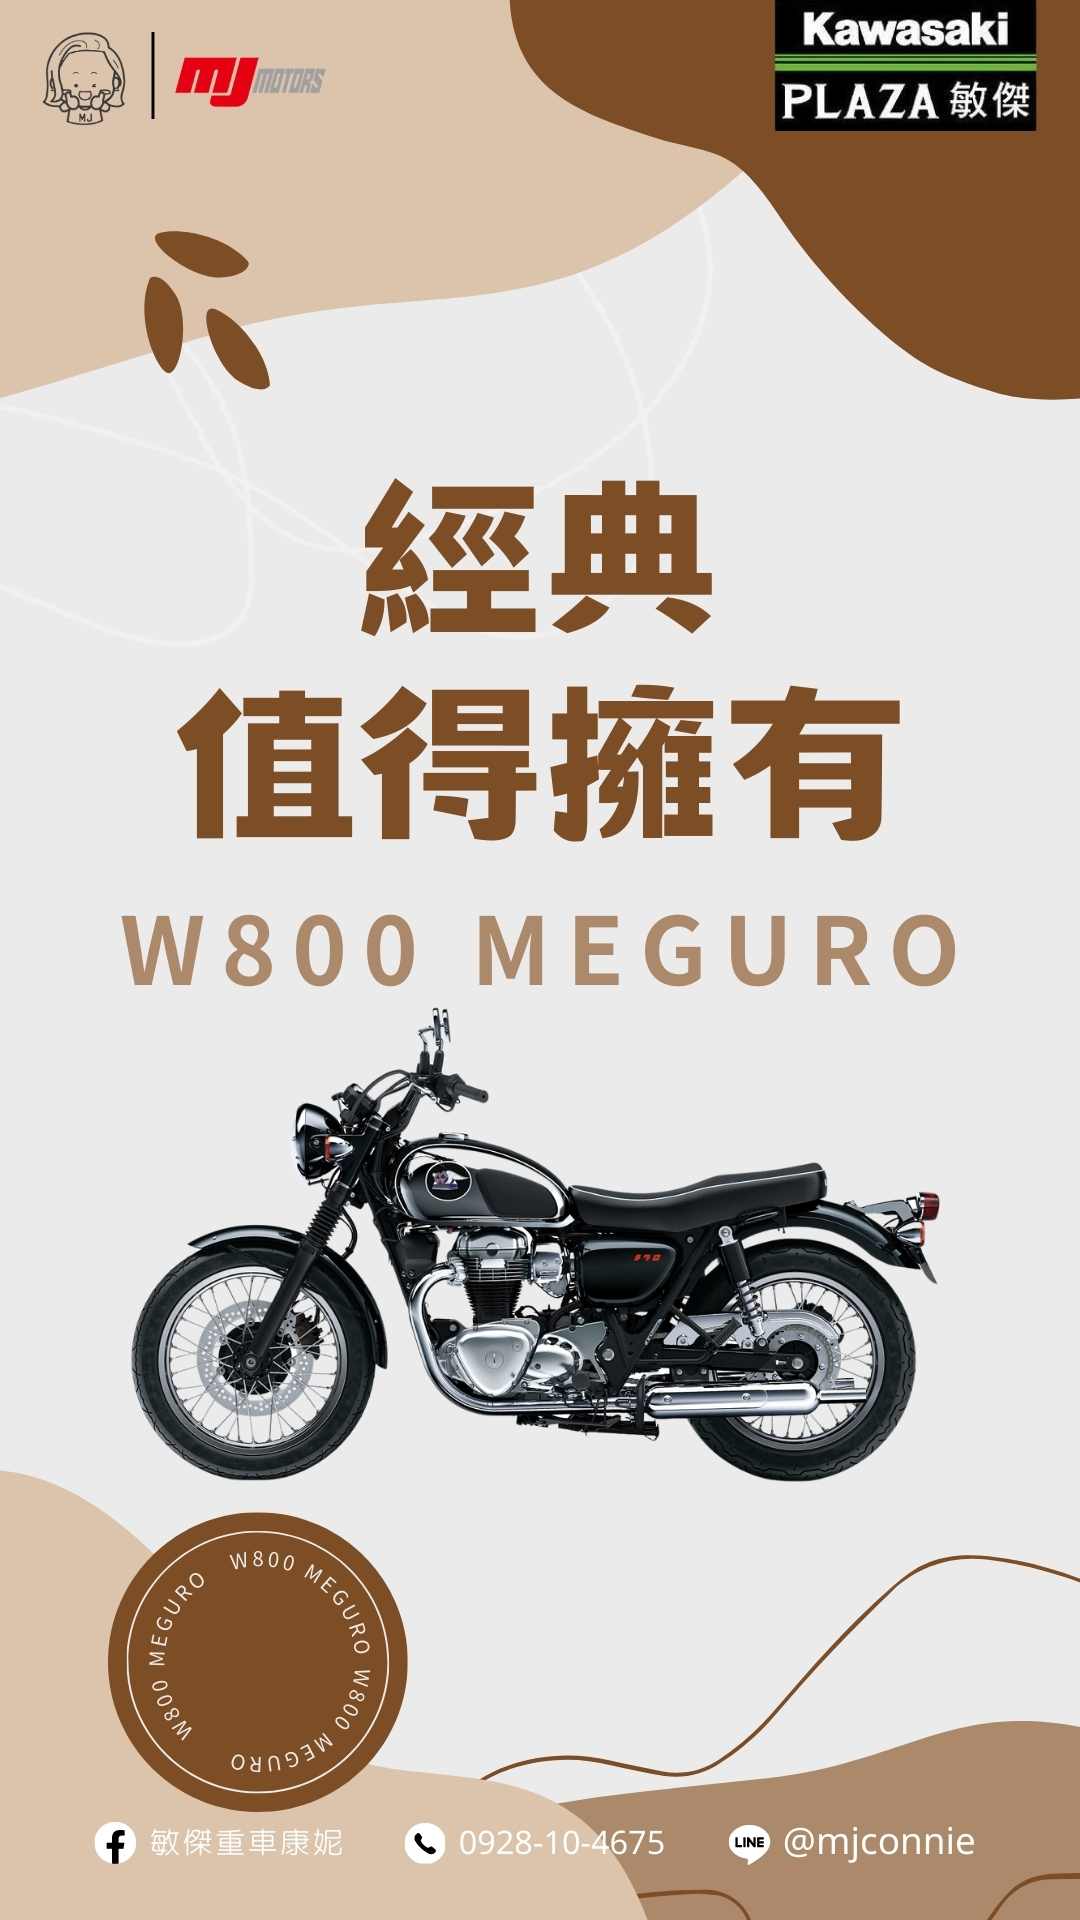 KAWASAKI W800新車出售中 『敏傑康妮』Kawasaki W800 Meguro K3 有歷史典故的車款 最值得收藏 現在就聯絡康妮 帶她回家 | 敏傑車業資深銷售專員 康妮 Connie